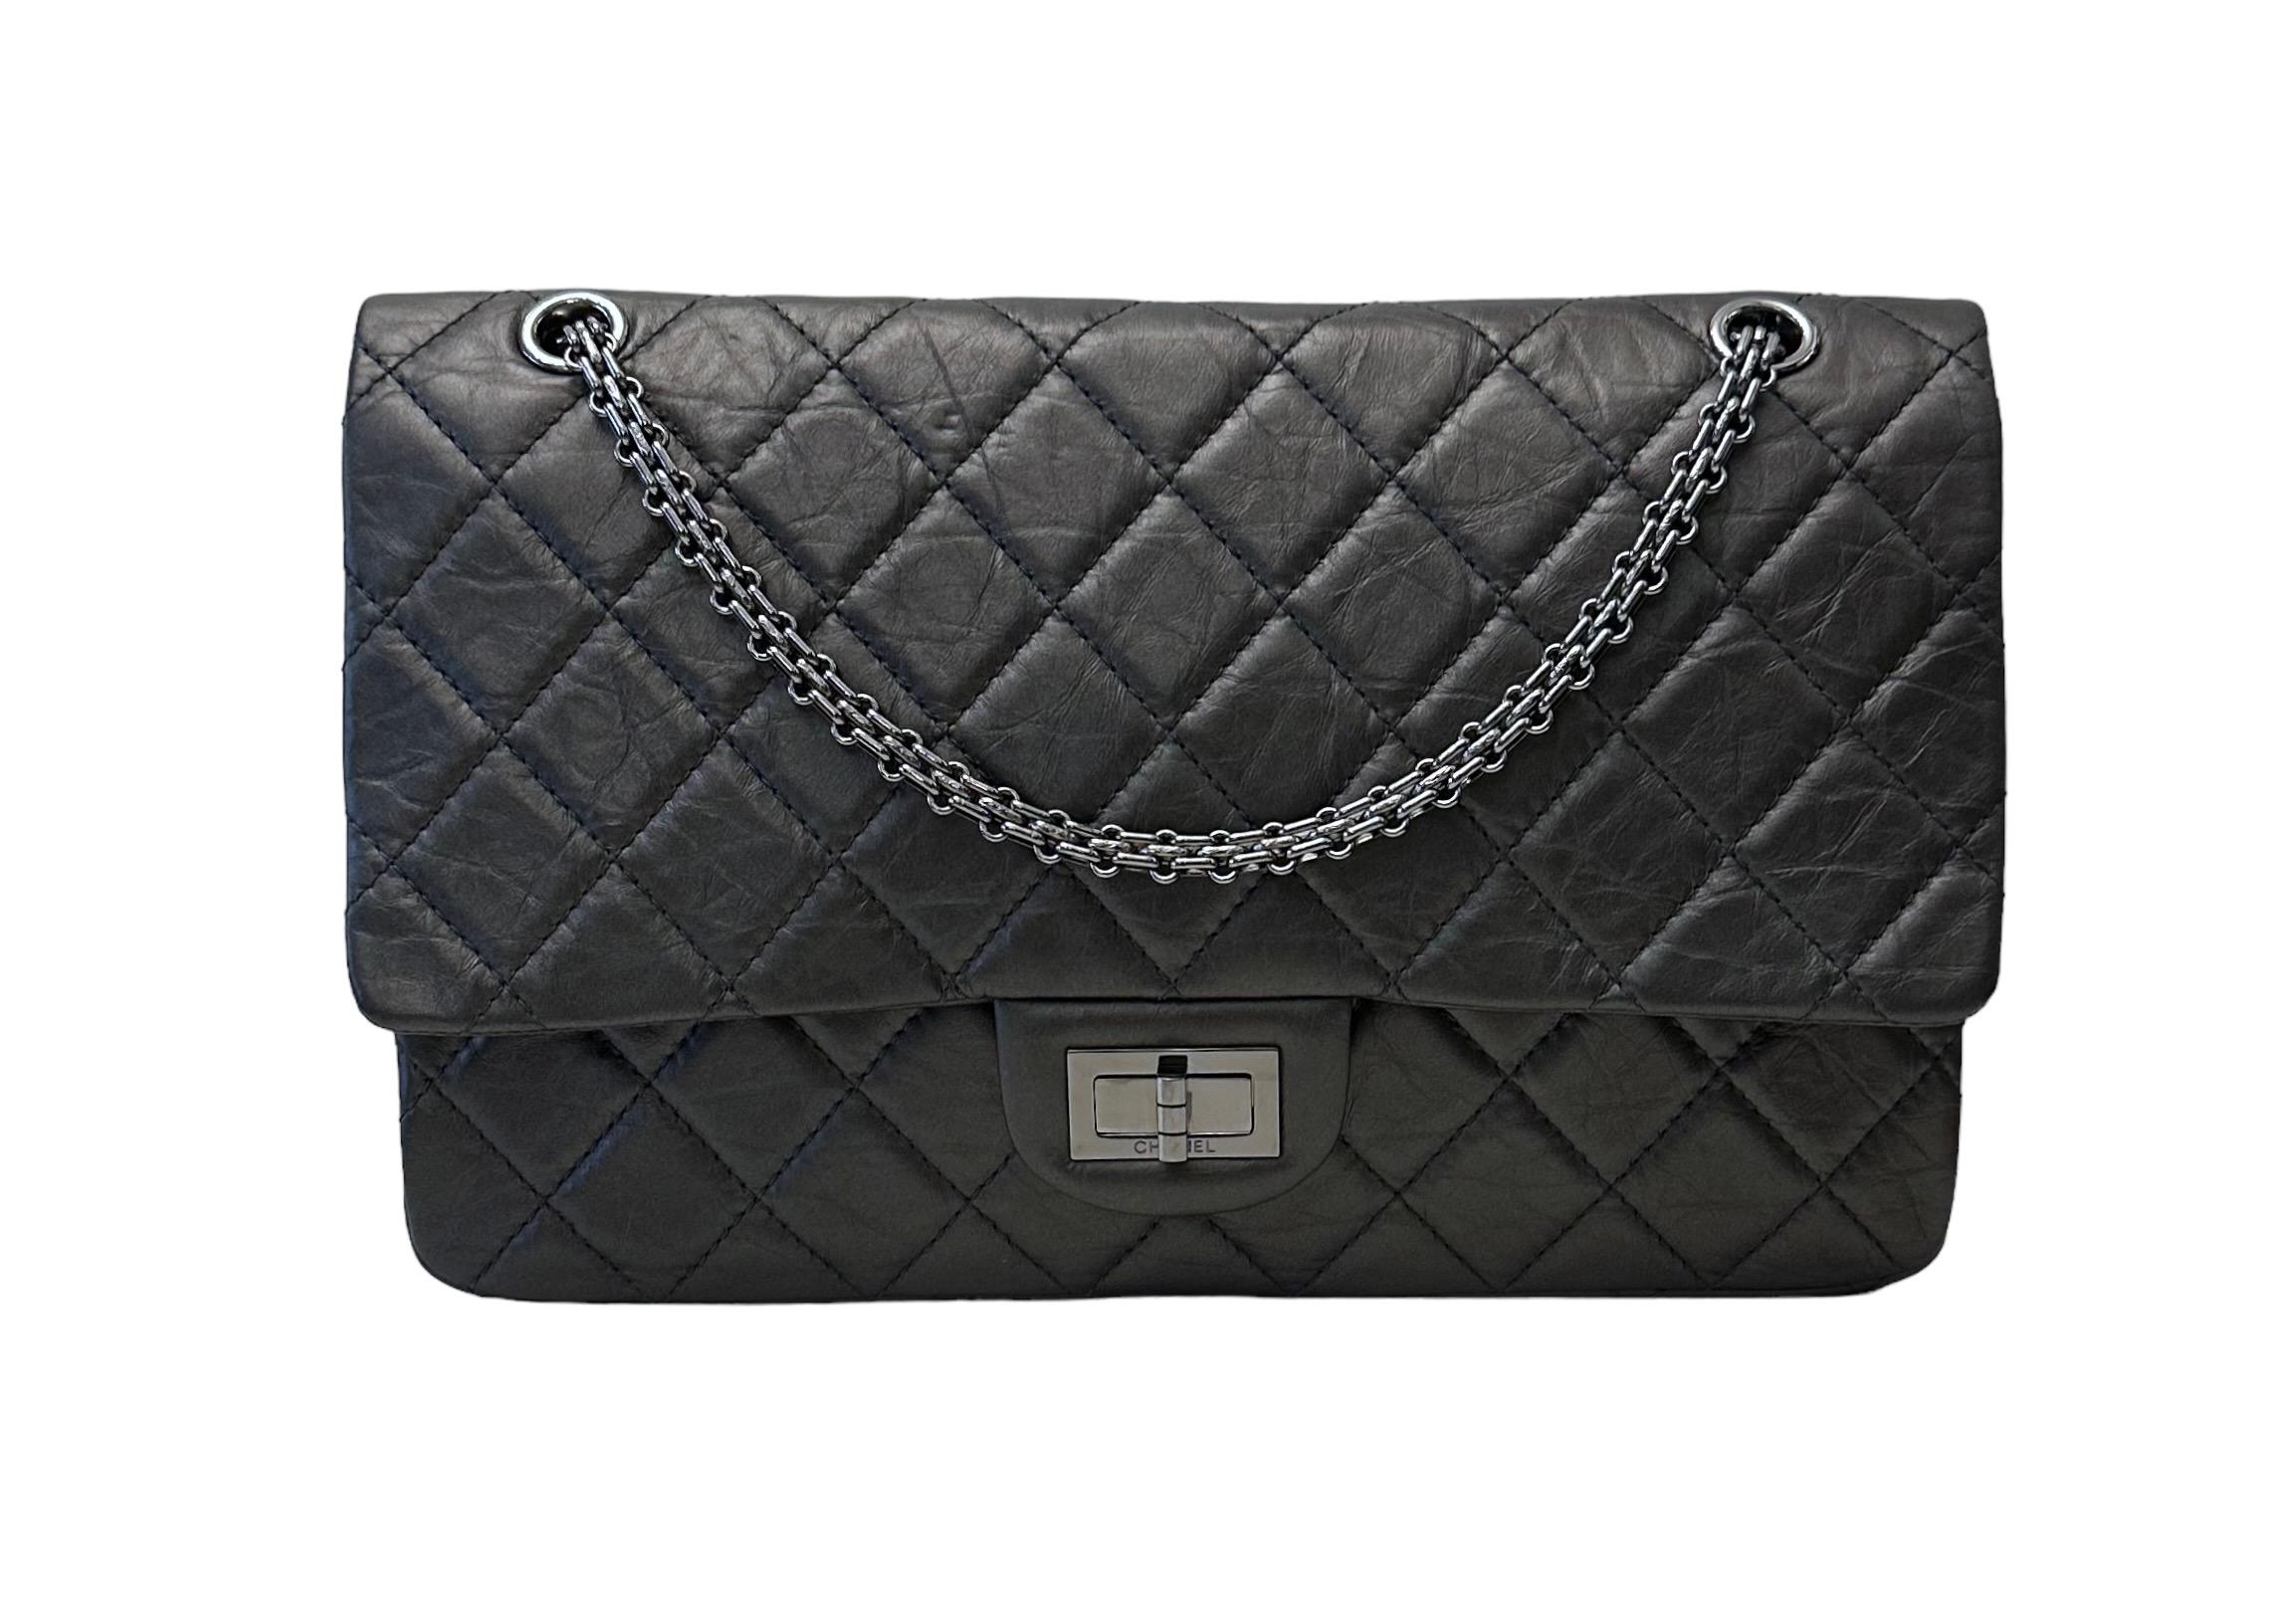 Diese wunderschöne gebrauchte Chanel 2,55 Classic Doubleflap Maxi Bag - 5 Taschen ist die kultigste Handtasche in der Welt der Mode ist in einem wunderschönen dunkelgrau gealtert gesteppt Kalbsleder gefertigt. 
Sie verfügt über einen